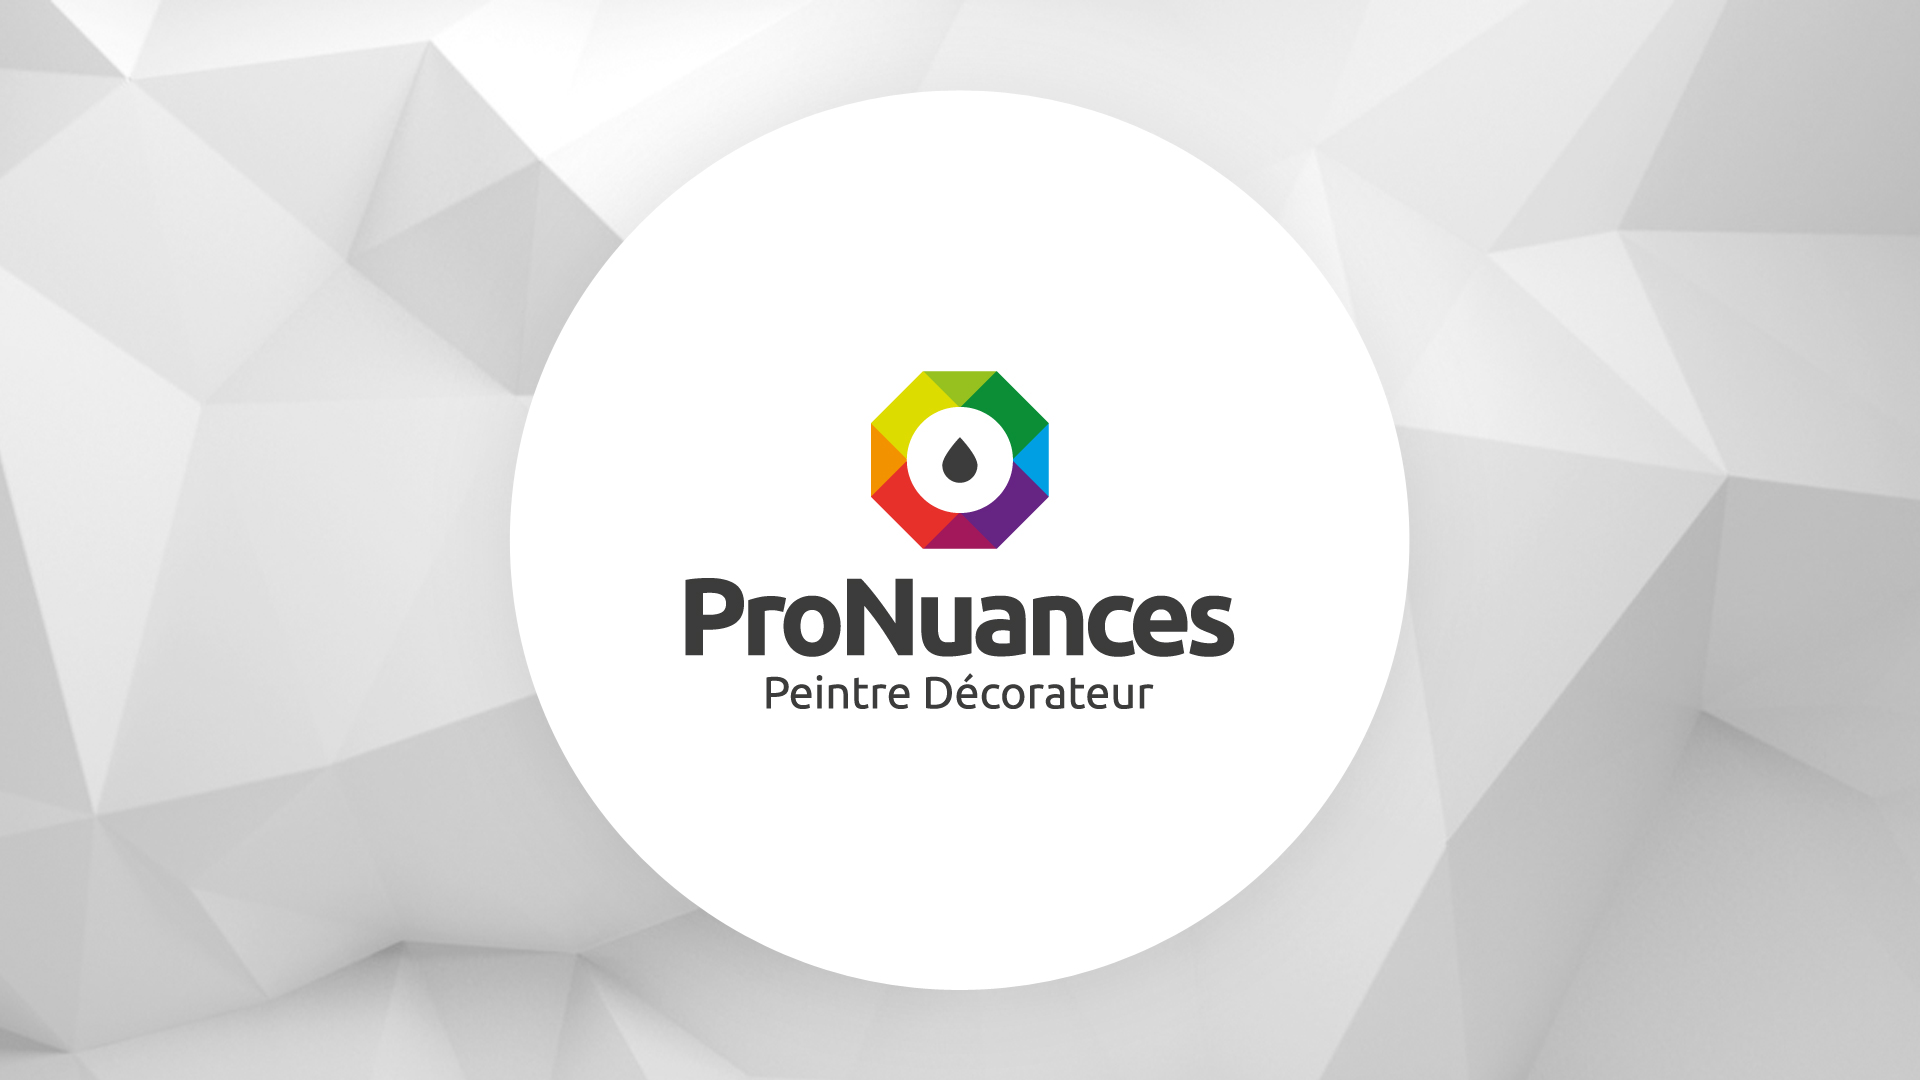 pronuances-creation-logo-identite-visuelle-charte-graphique-caconcept-alexis-cretin-graphiste-montpellier-2